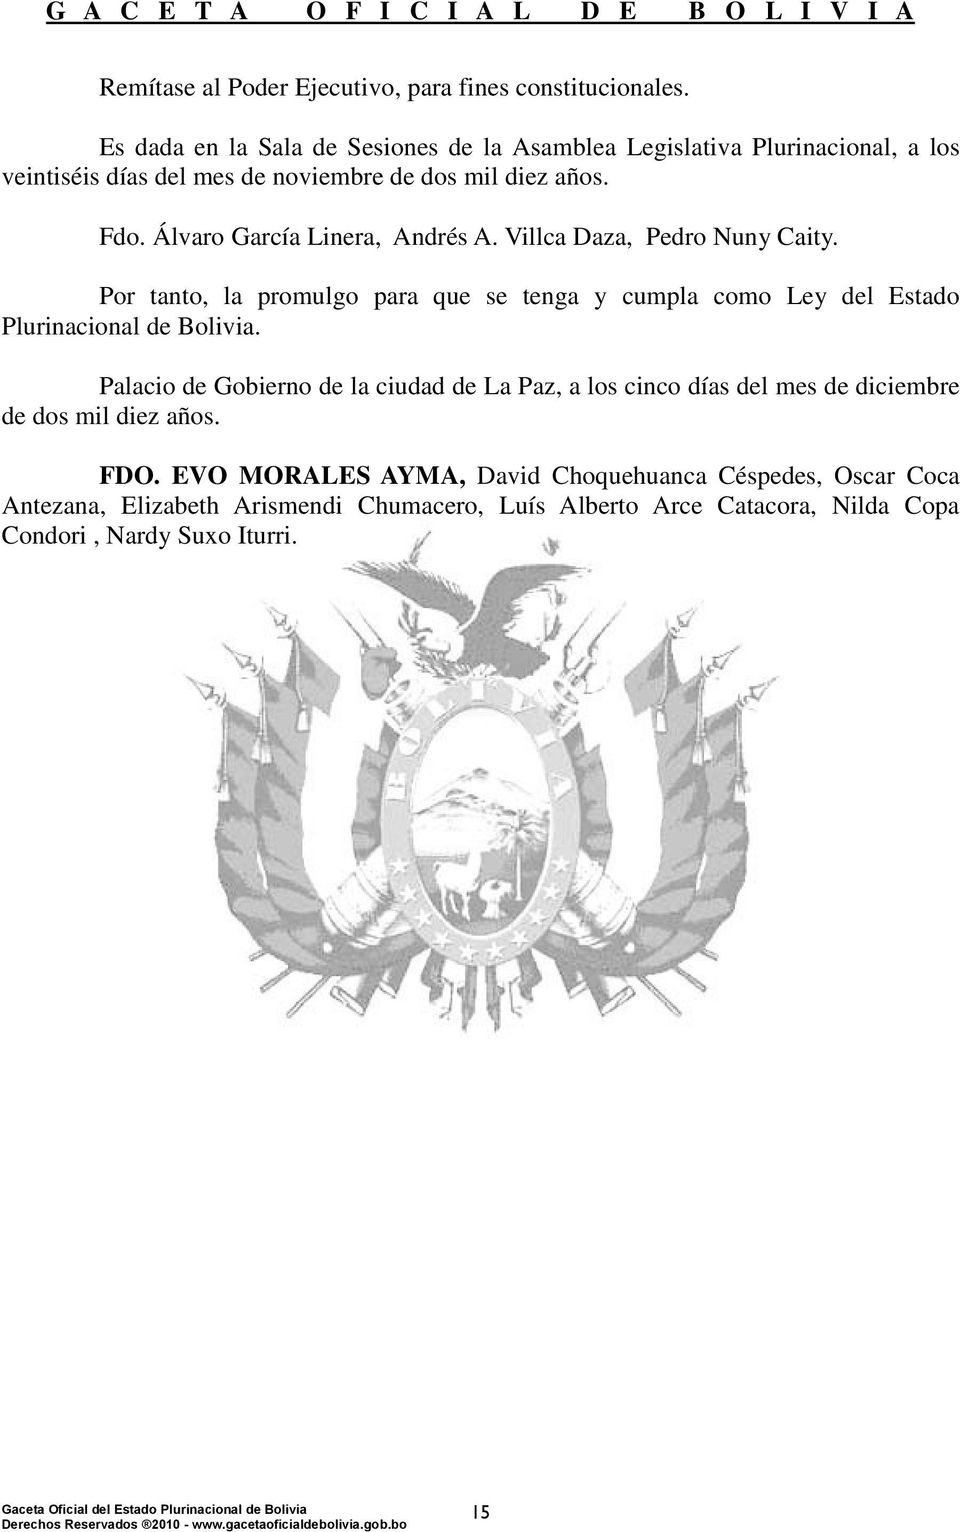 Álvaro García Linera, Andrés A. Villca Daza, Pedro Nuny Caity. Por tanto, la promulgo para que se tenga y cumpla como Ley del Estado Plurinacional de Bolivia.